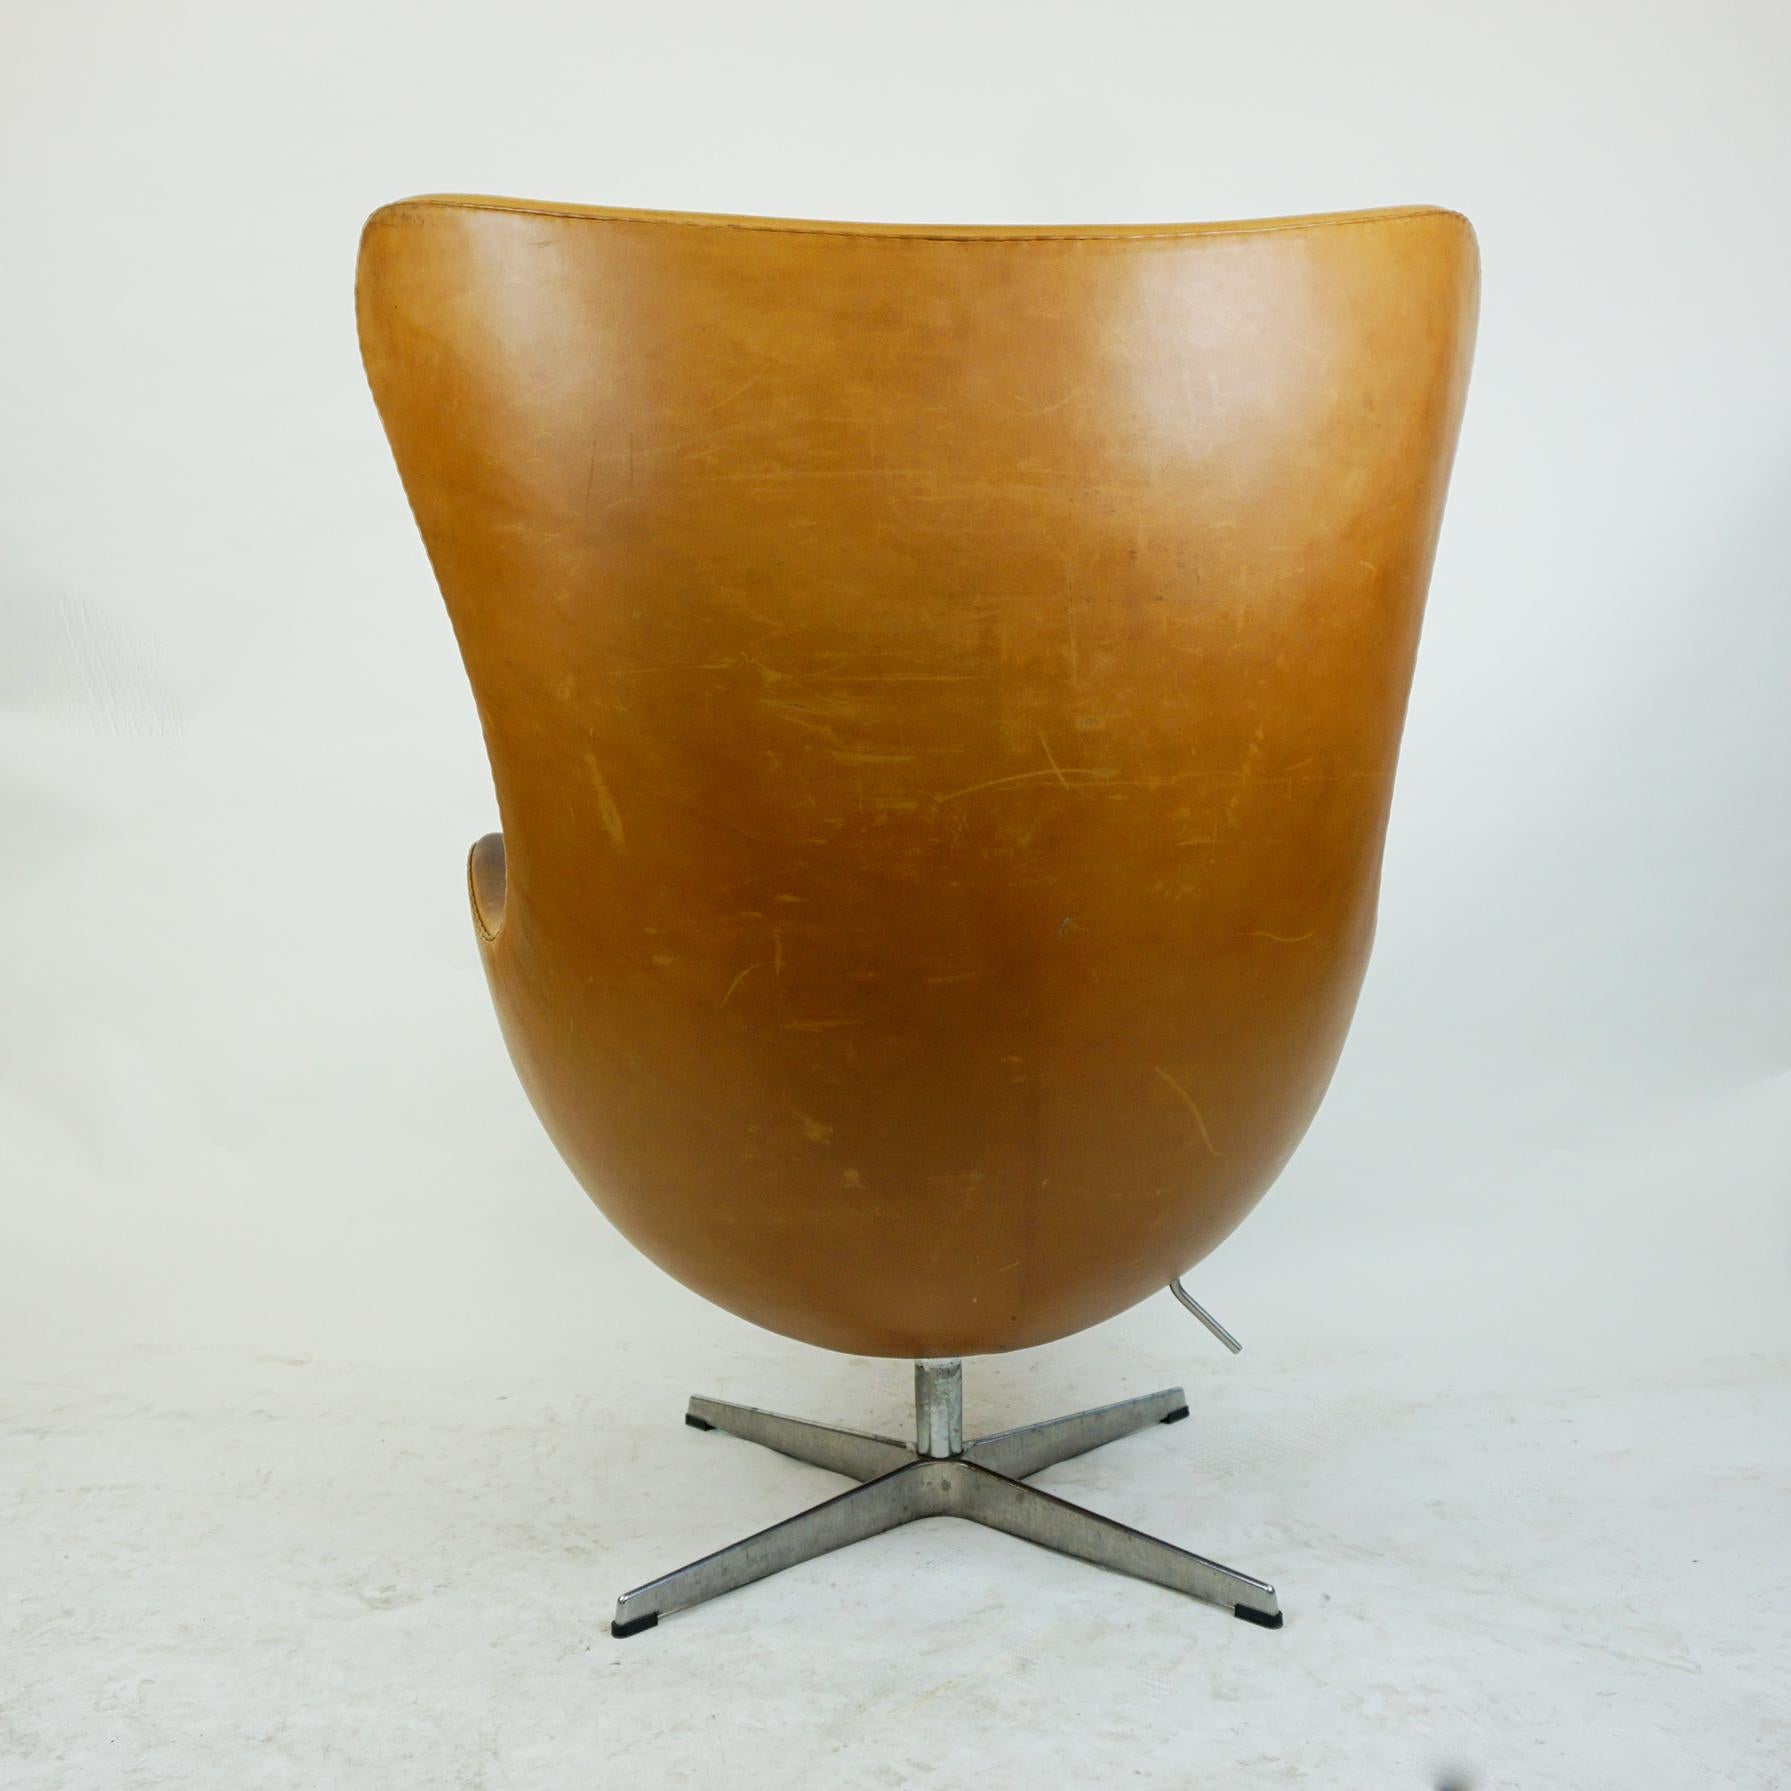 Scandinavian Modern Cognac Leather Egg Chair, Mod. 3317 by Arne Jacobsen for Fritz Hansen